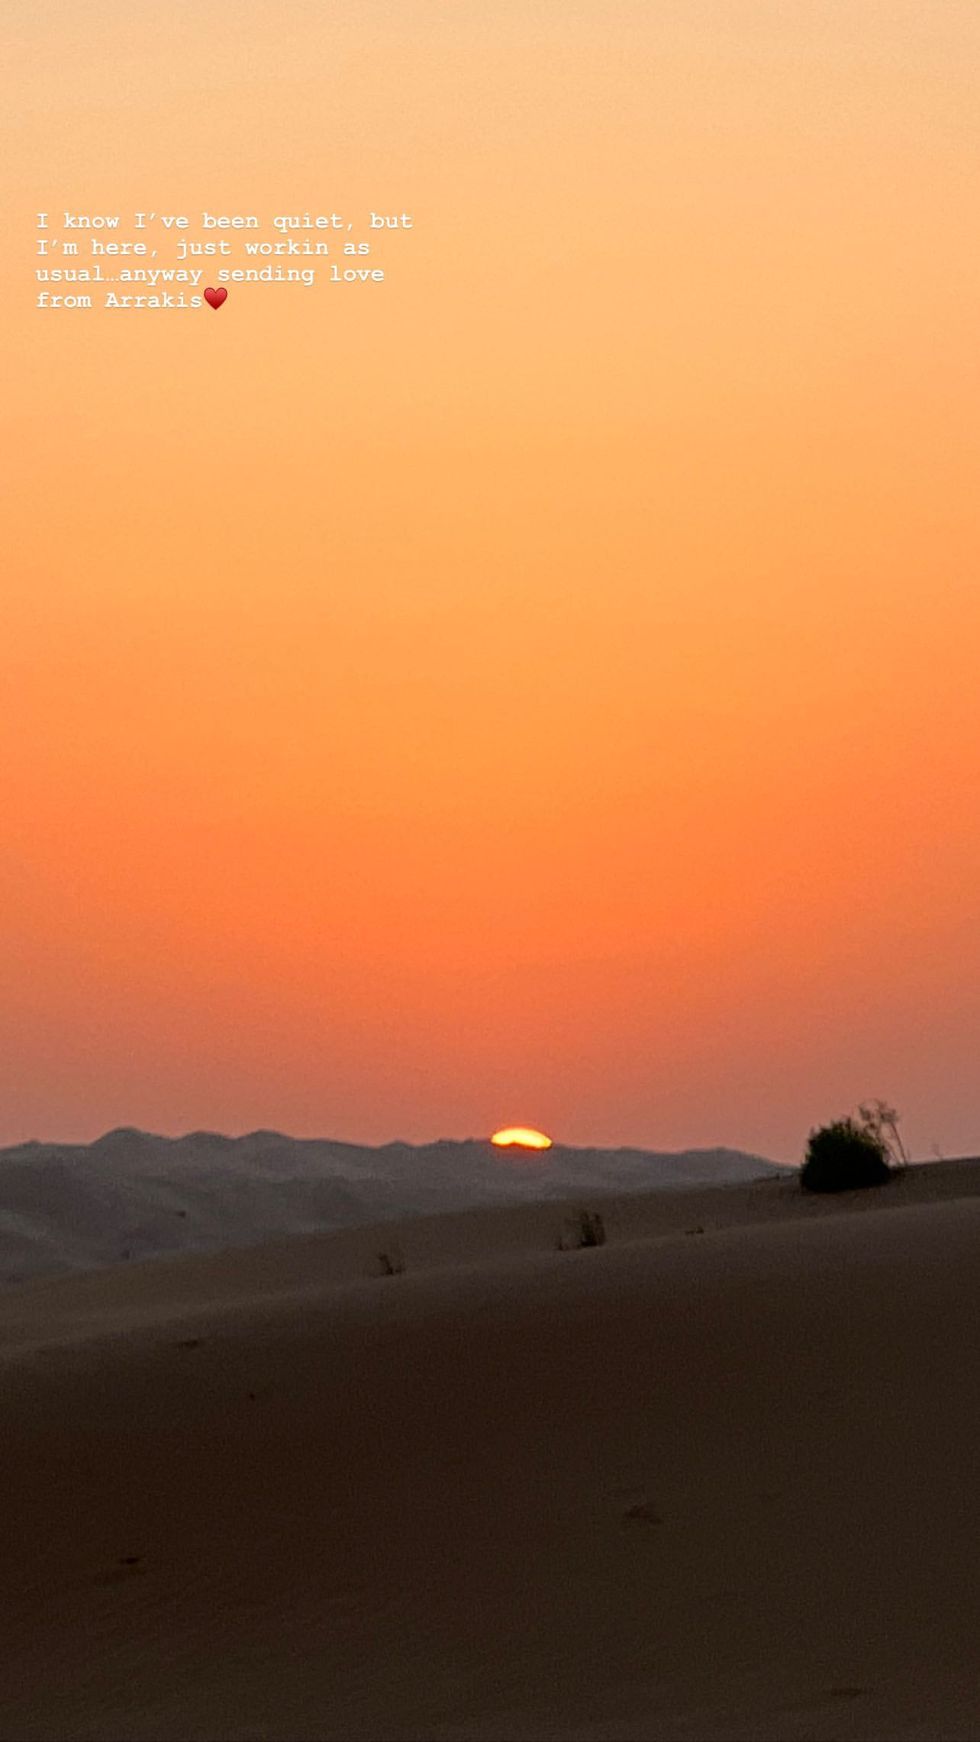 zendaya shares behind the scenes look at dune part 2 filming